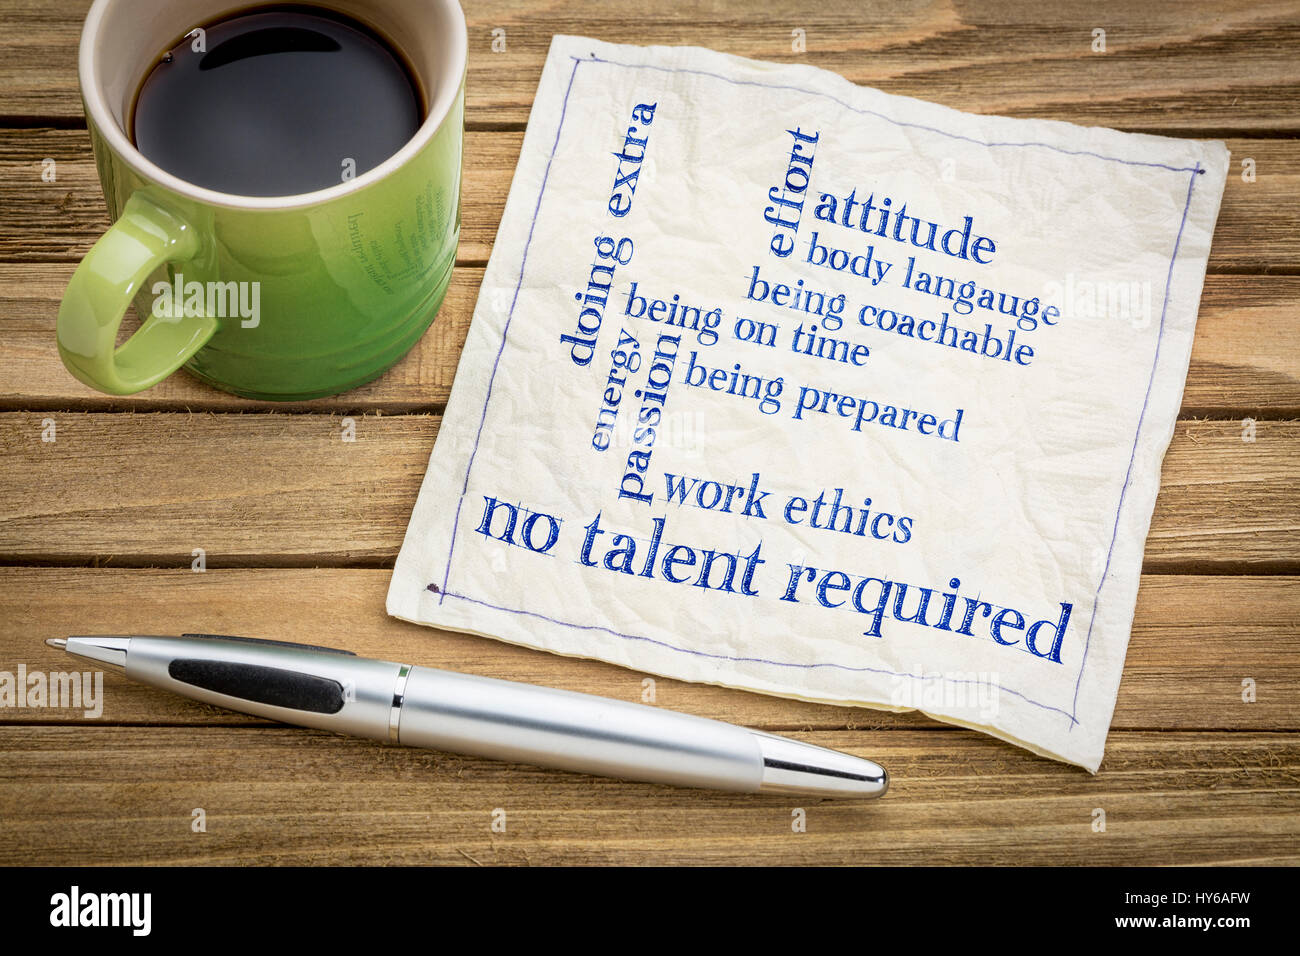 Aucun talent d'écriture - concept requis sur une serviette avec une tasse de café Banque D'Images